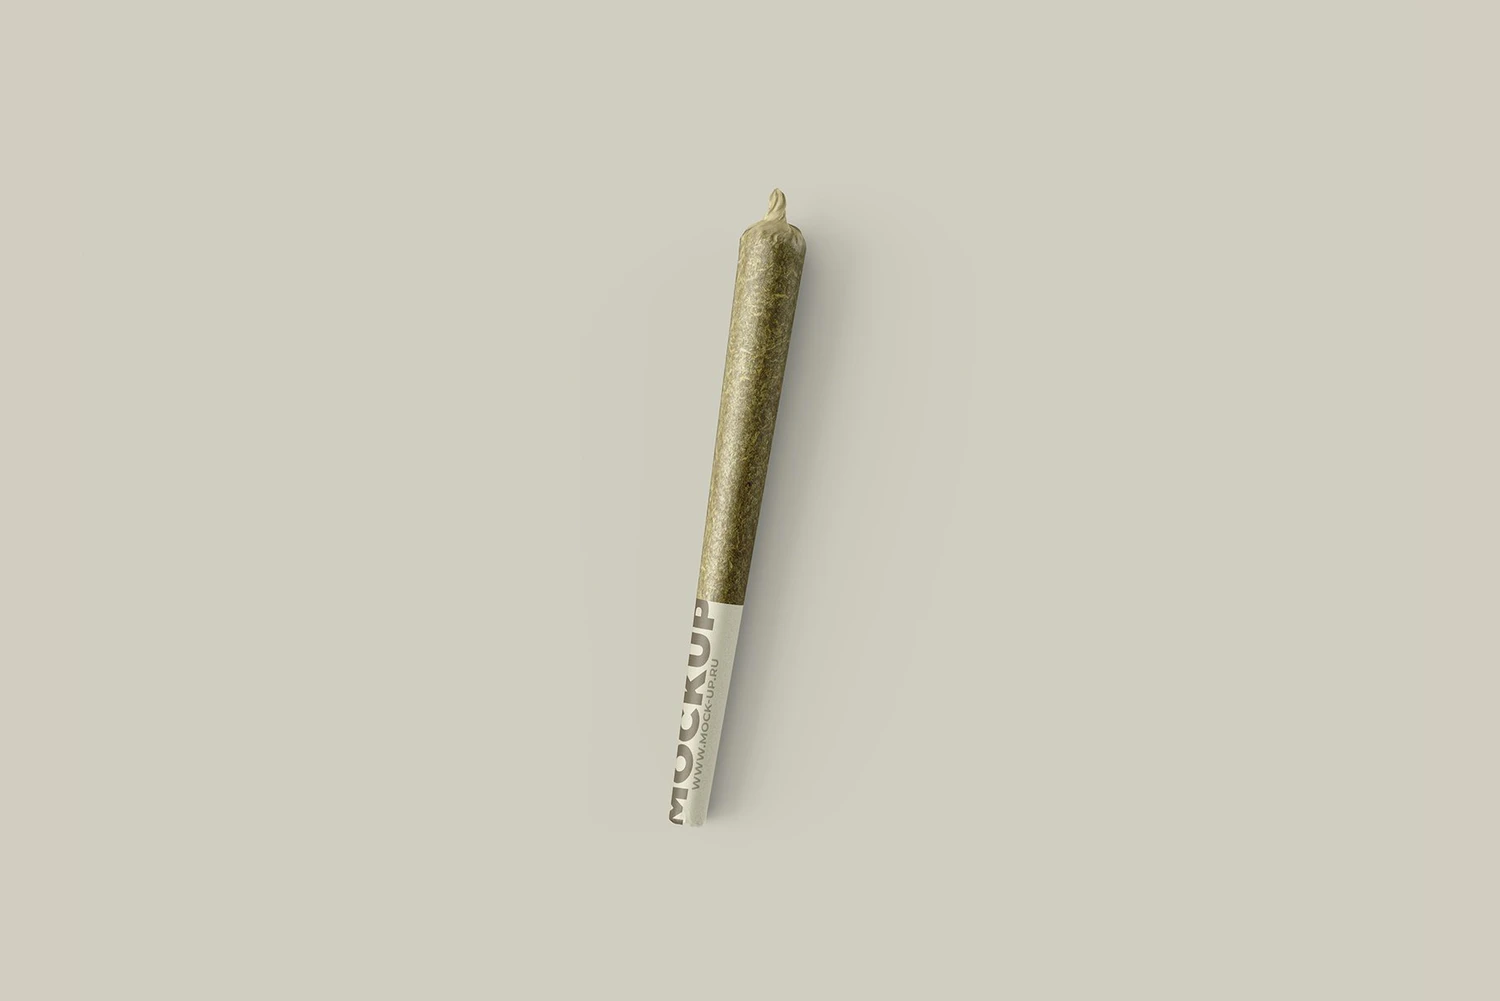 112 烟卷烟草标签包装设计样机模板Weed Joint Pre-Roll Tubes 4 PSD 4975262